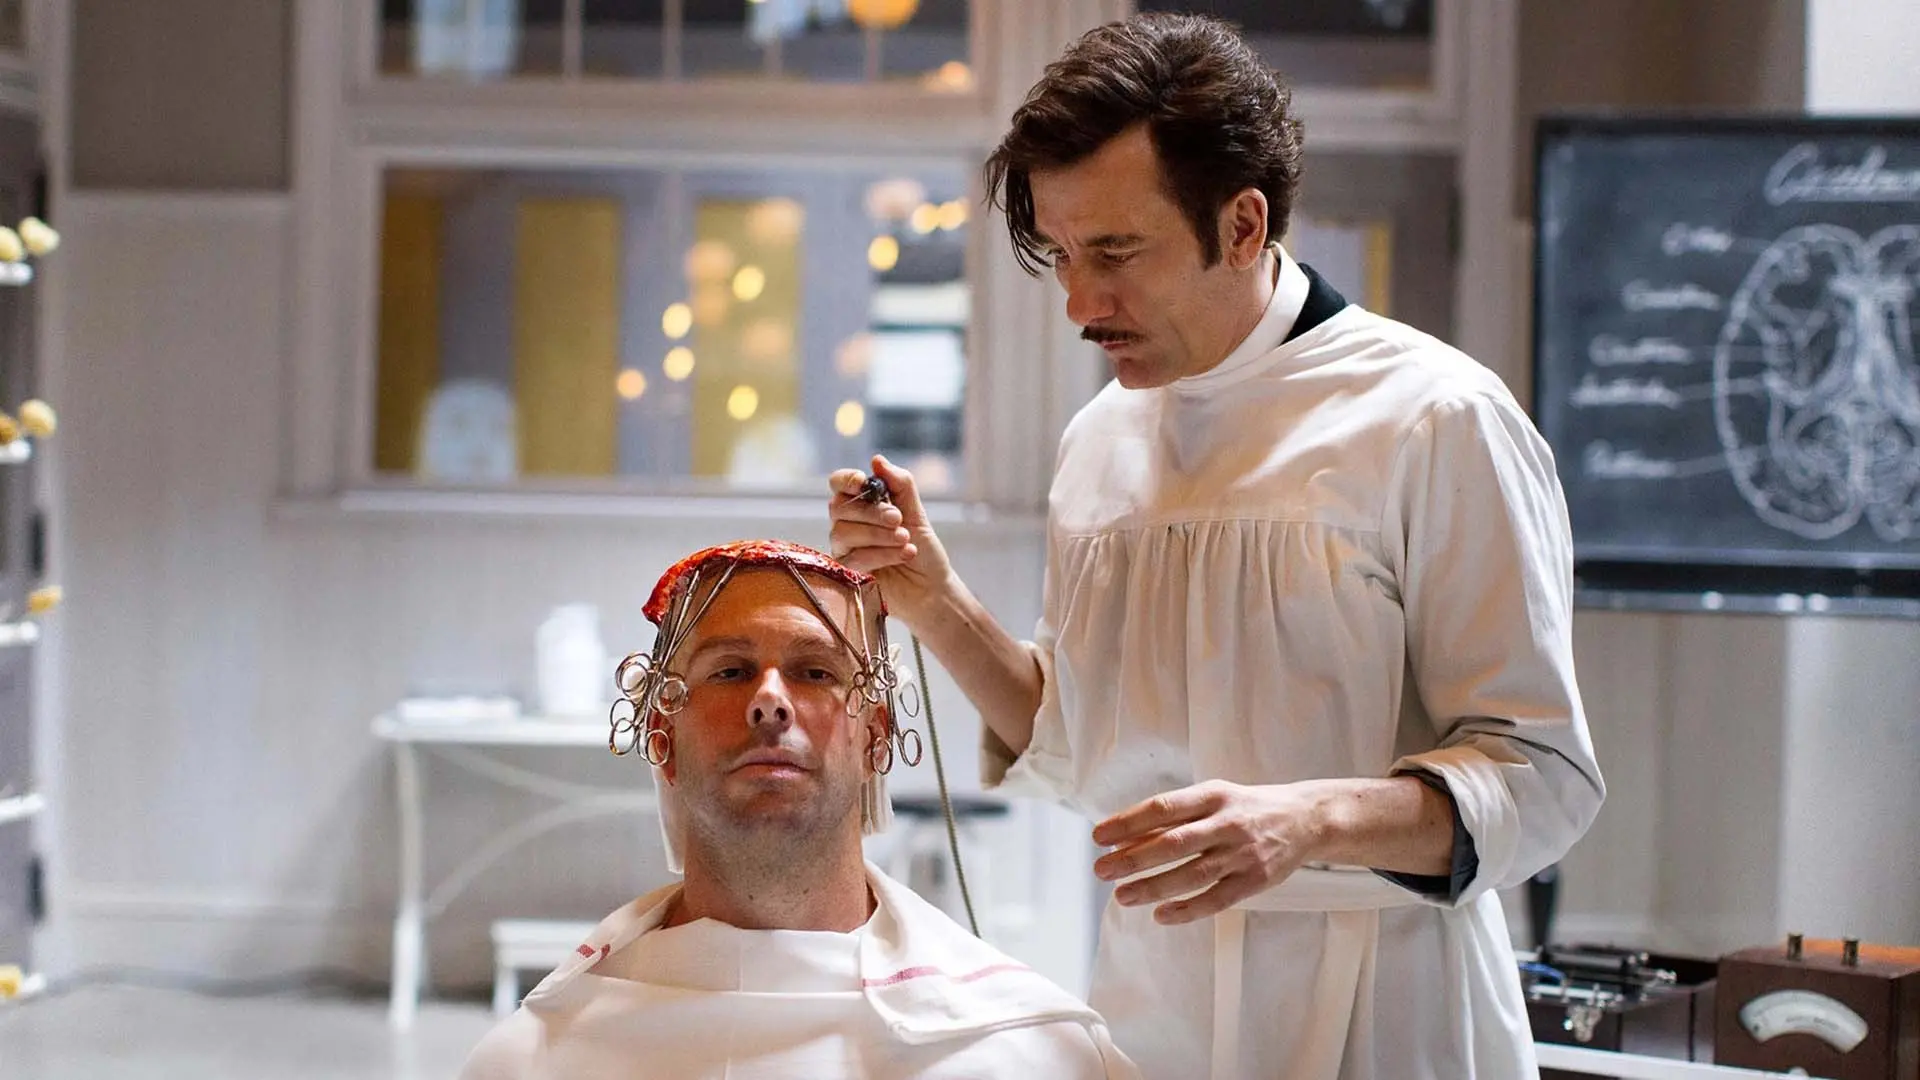 پزشک در حال انجام عمل روی سر بیمار در سریال The Knick